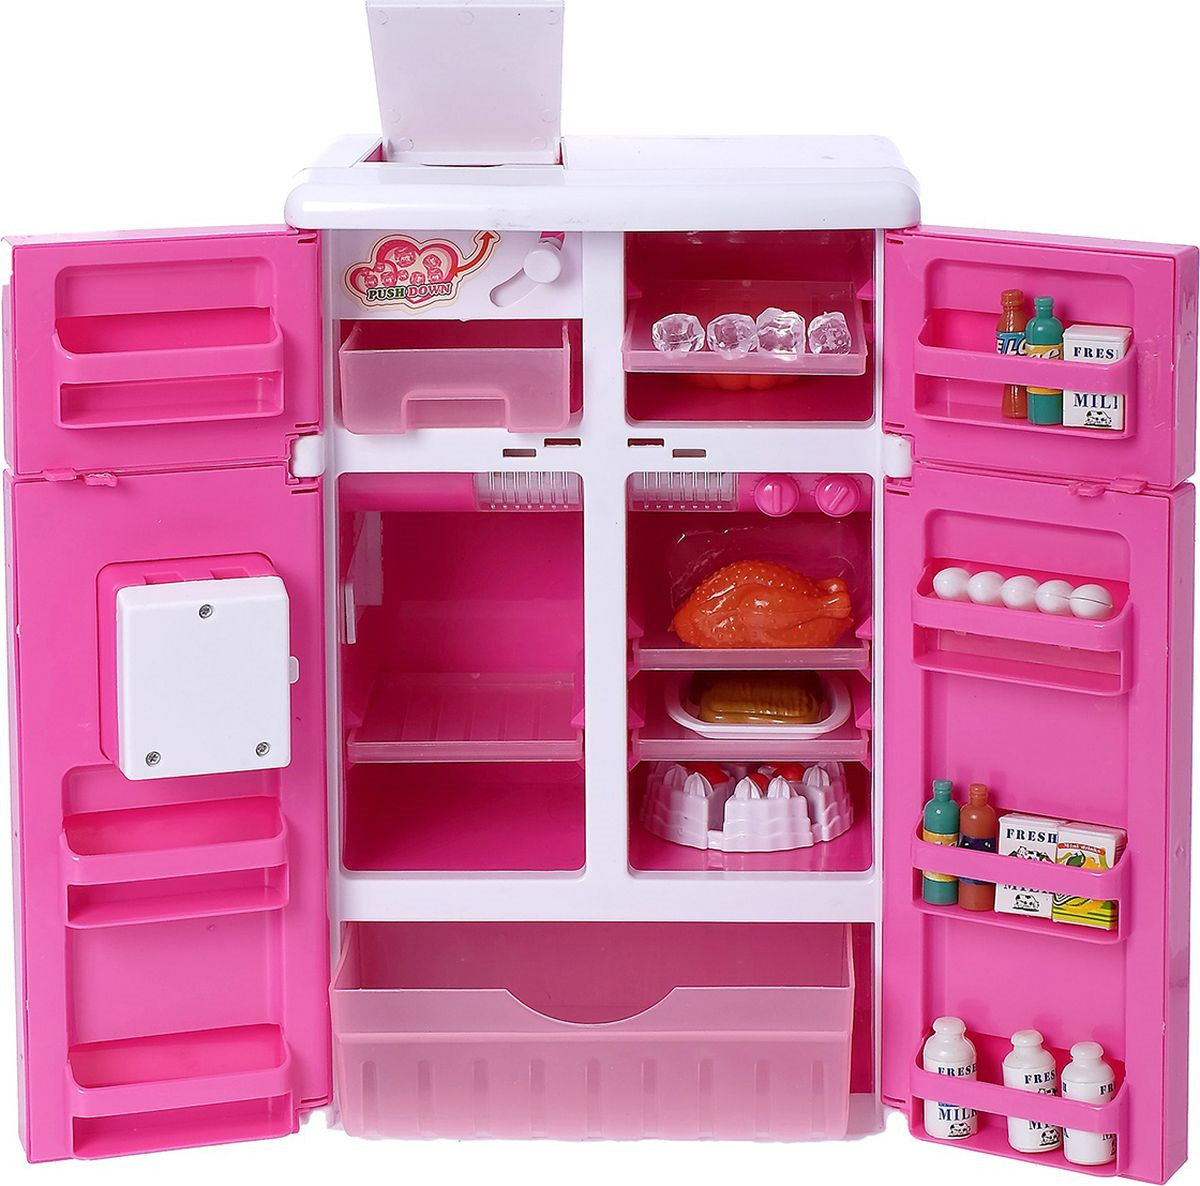 фото Сюжетно-ролевая игрушка "Холодильник двухдверный", с аксессуарами, сот световыми и звуковыми эффектами, 1108288